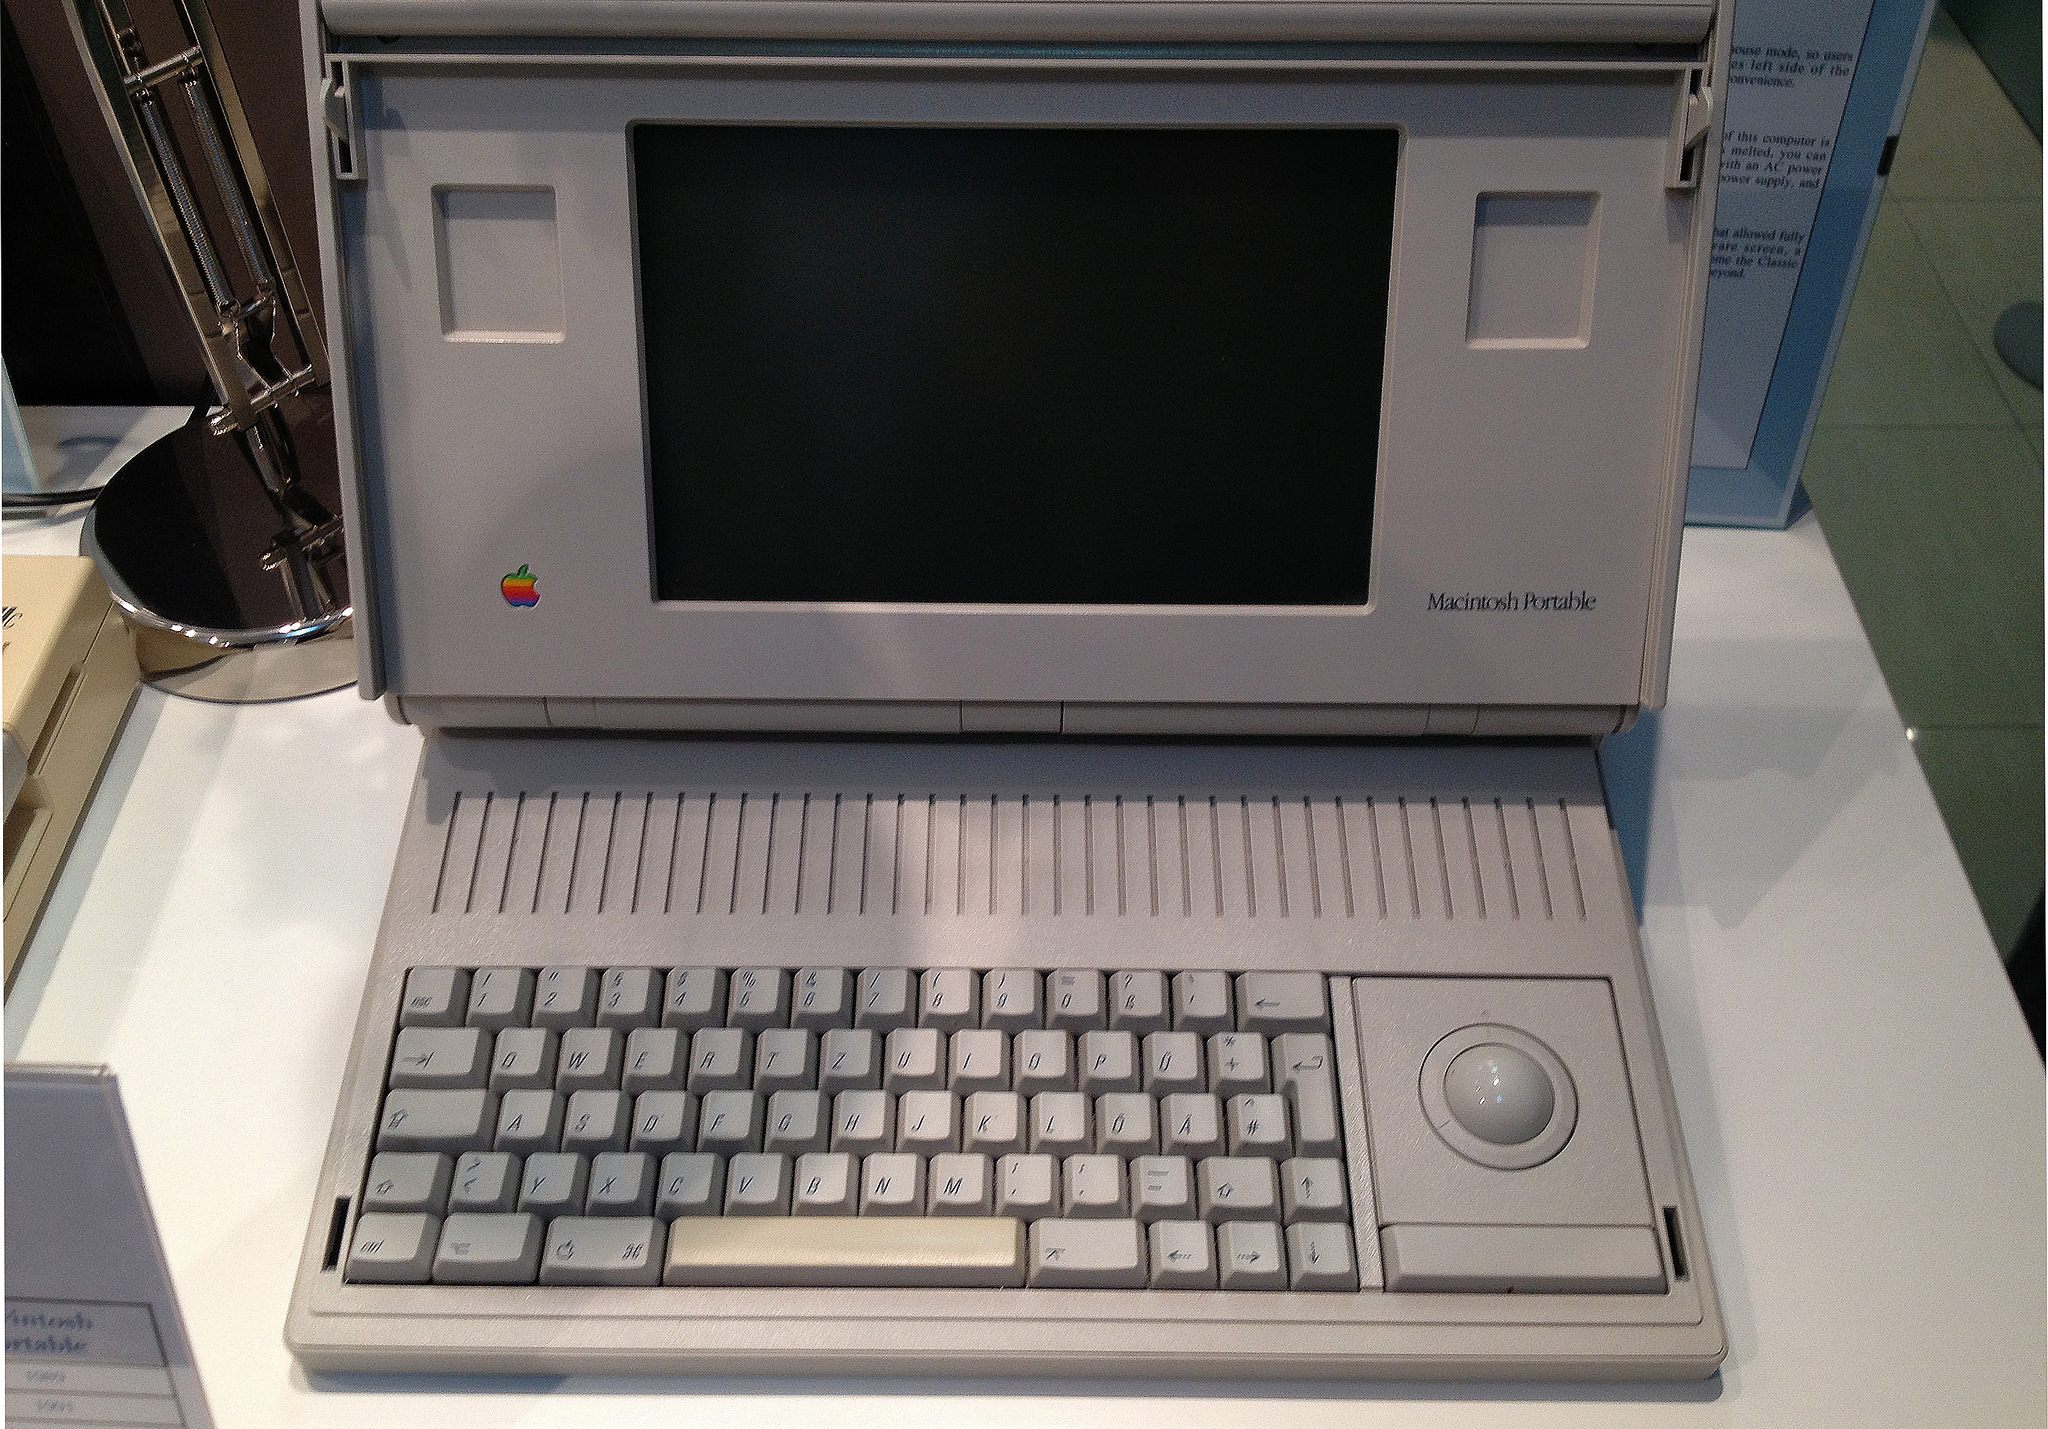 Prvo prijenosno Mac računalo predstavljeno je 1989. godine, no nije baš bio previše uspješan. <b>Andy Hertzfeld</b>, jedan od prvih zaposlenika Applea, Mac Portable je opisao kao "užasno skup i užasno težak" kompjuter. Koštao je 6500 dolara, imao je 16 MHz procesor, te olovnu bateriju kojoj je trebala cijela vječnost da se napuni. Unatoč tržišnoj neuspješnosti, Apple je još 1989. godine predvidio da će se tržište računala usmjeriti prema prenosivim kompjuterima.